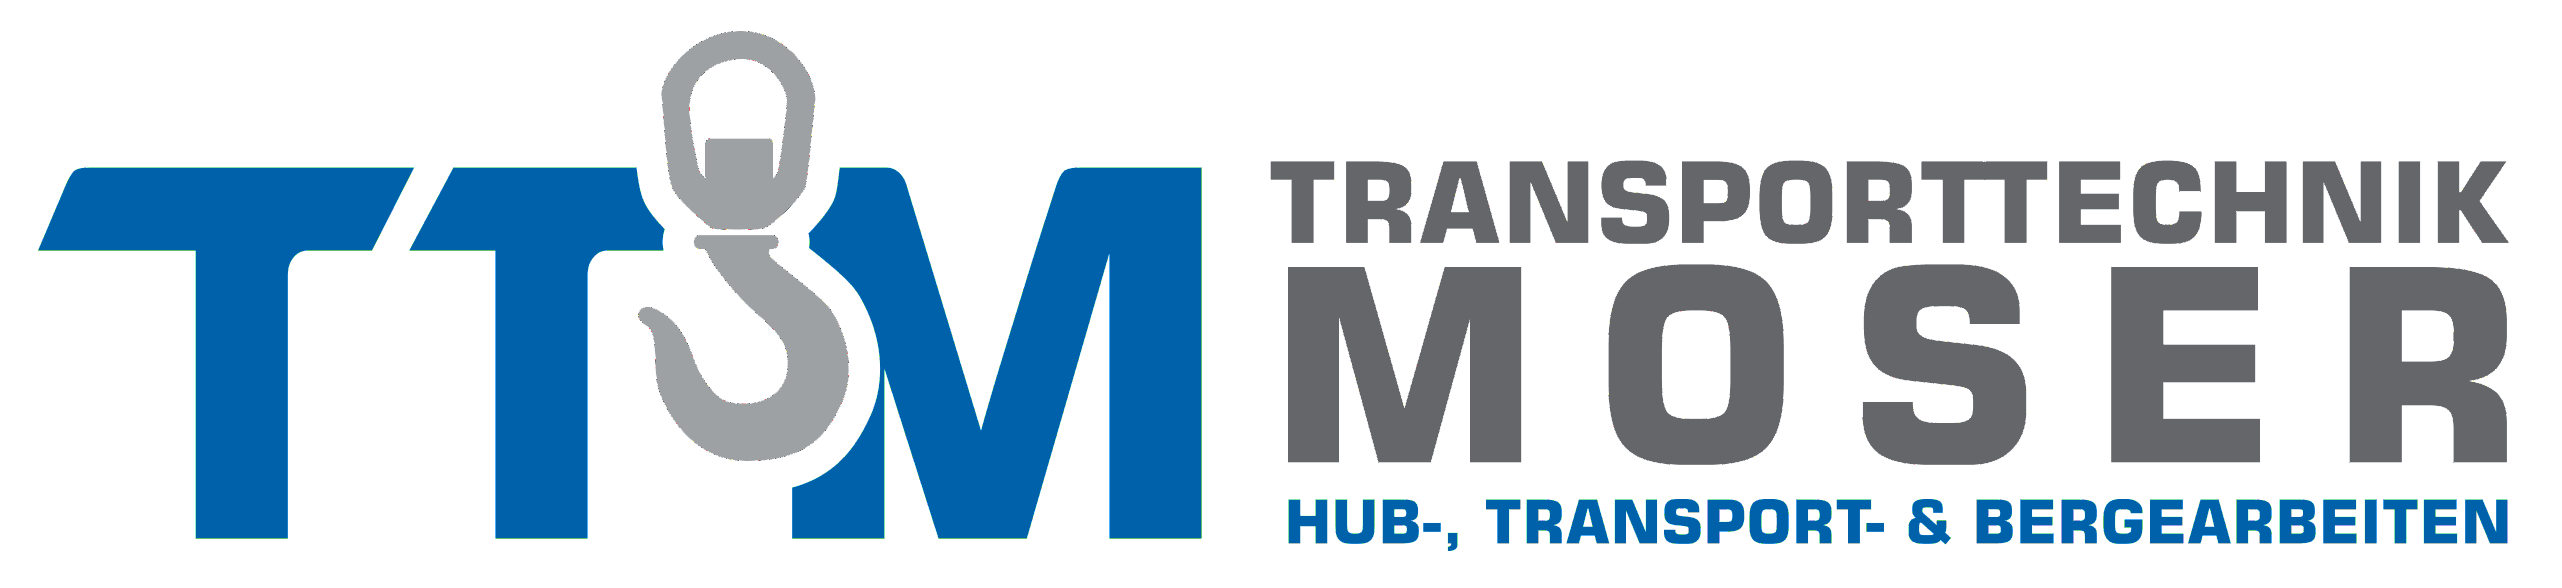 Transporttechnik Moser TTM Logo